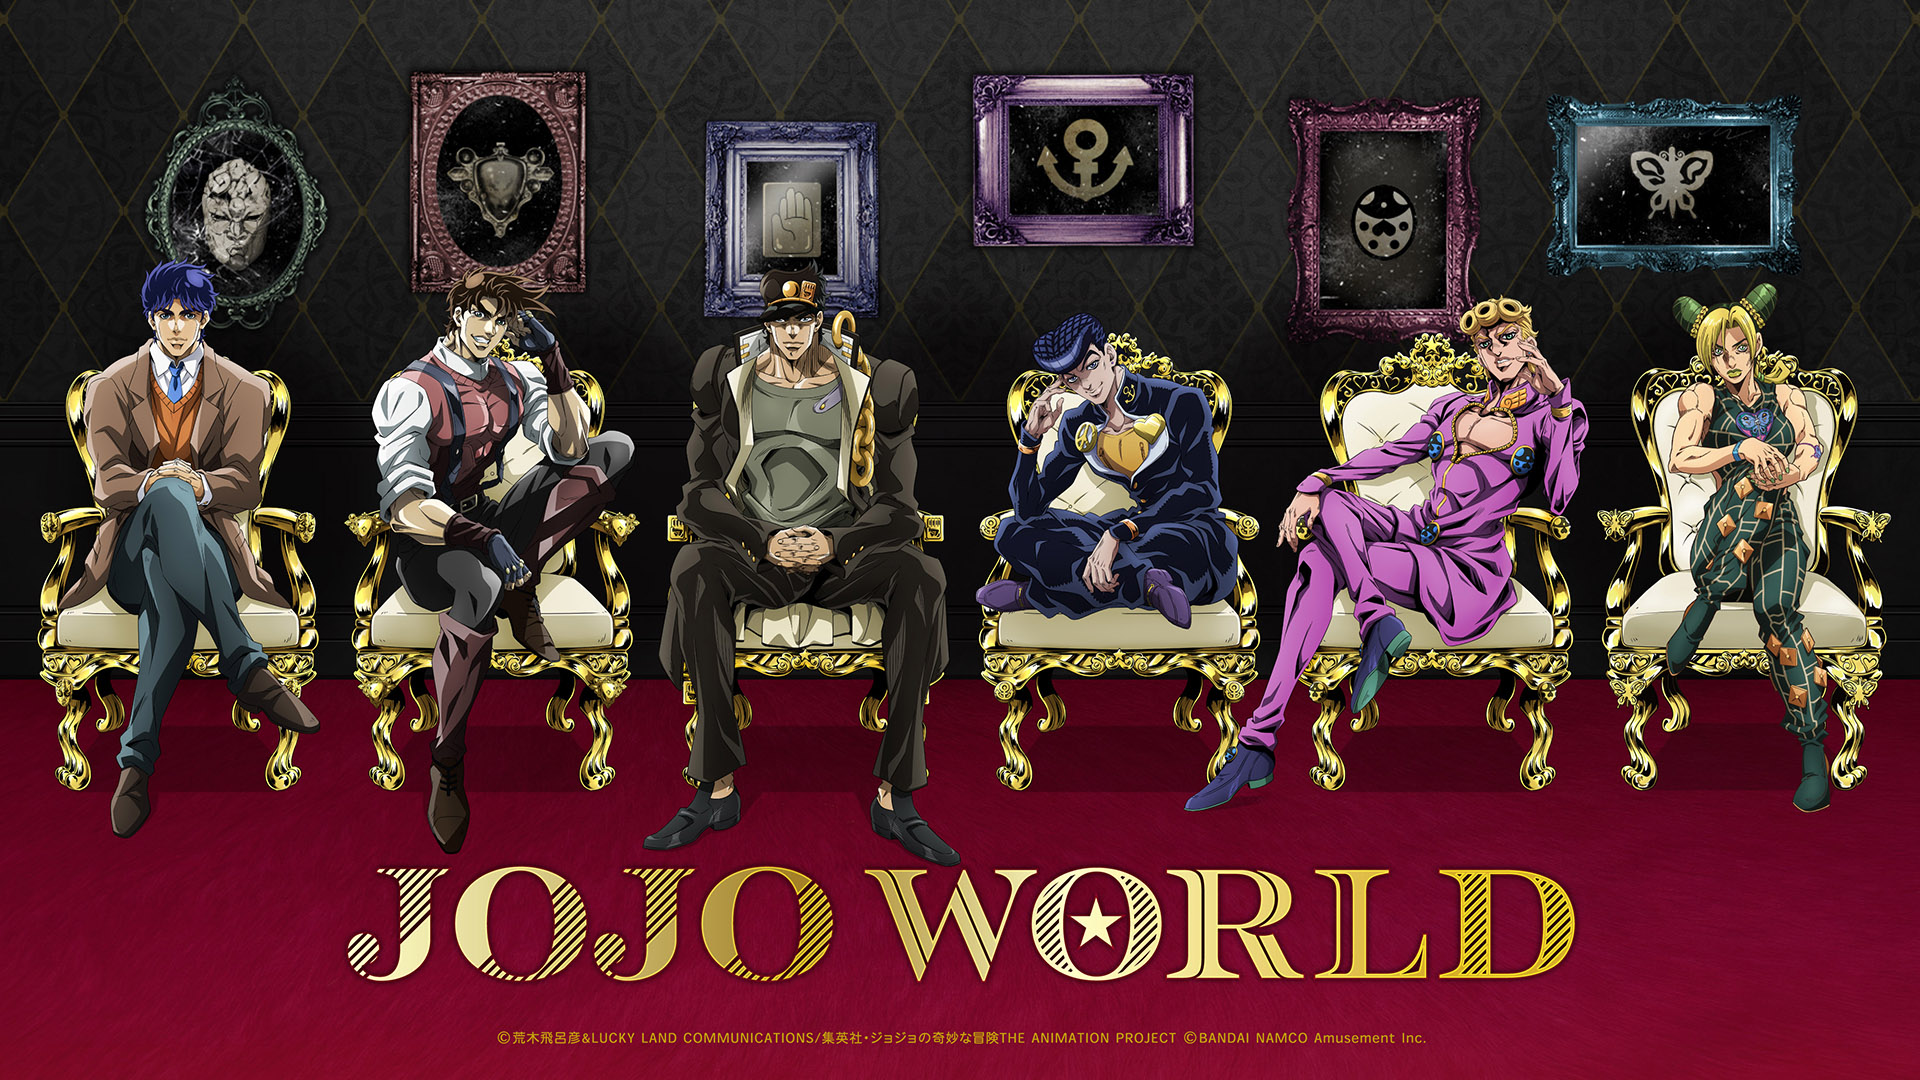 TVアニメ「ジョジョの奇妙な冒険」期間限定テーマパーク「JOJO WORLD 